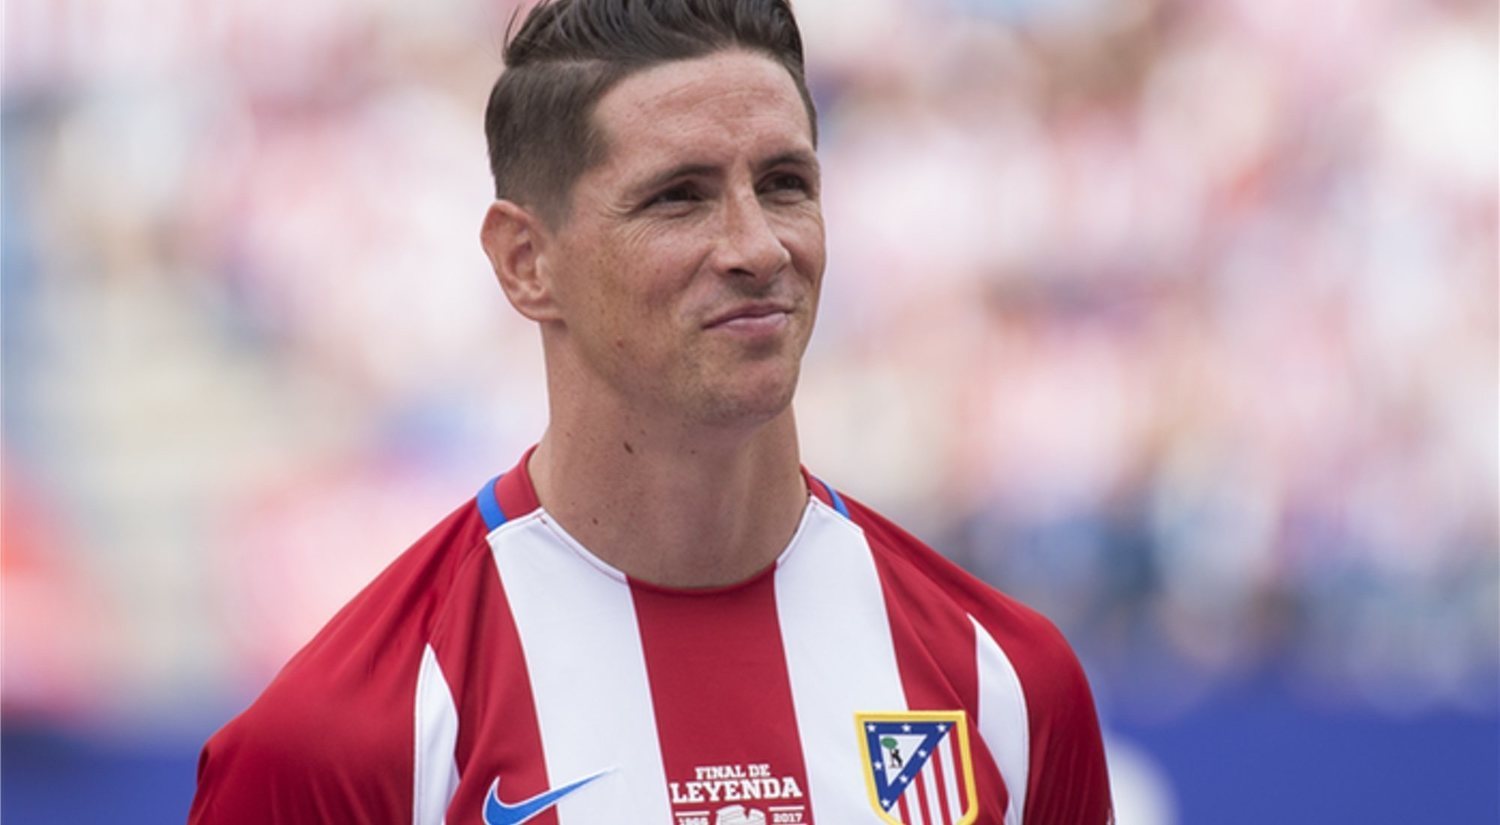 Fernando Torres se retira: su siguiente paso, llevar al Atlético a otro nivel